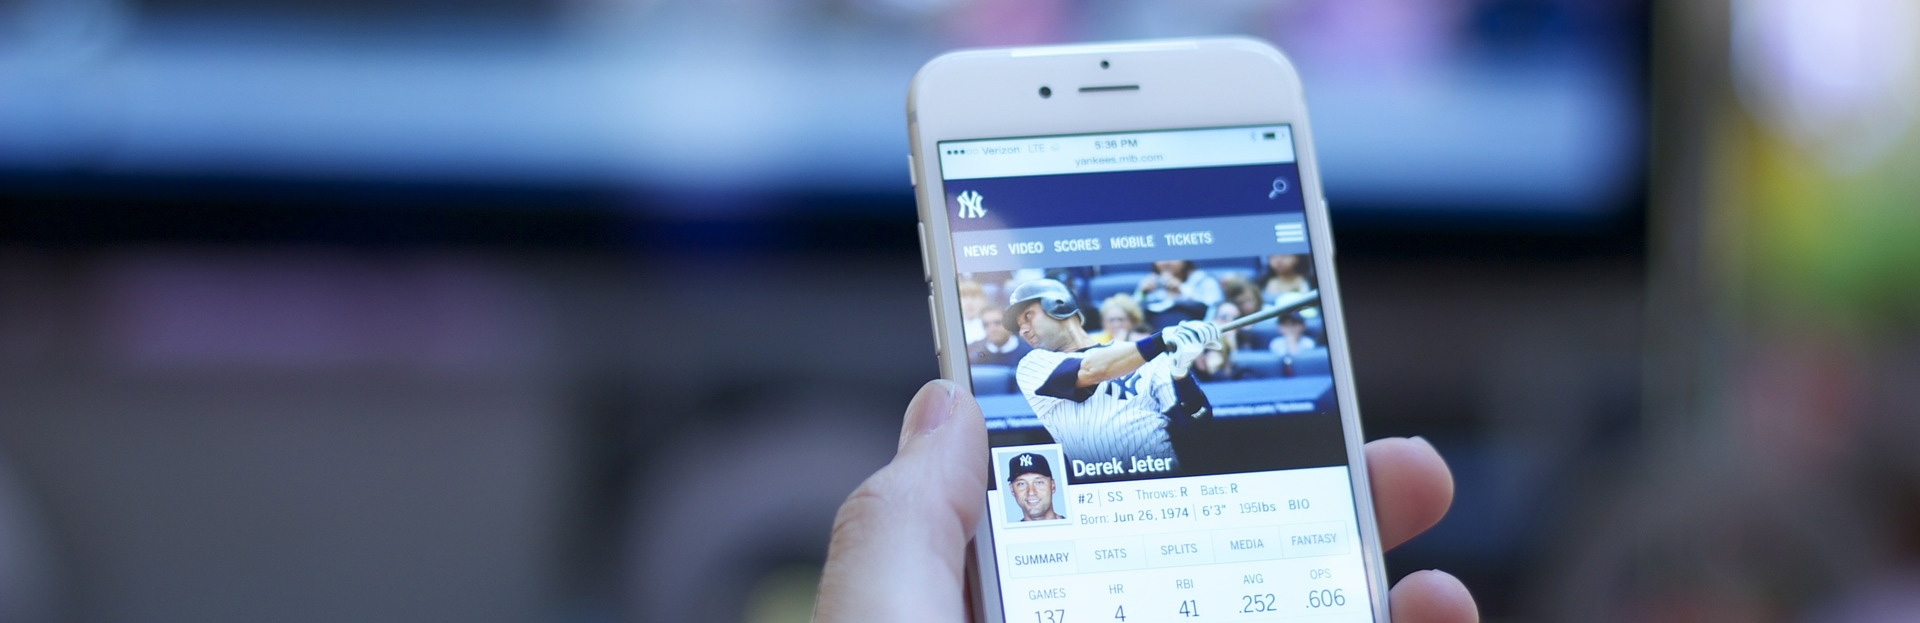 Smartphone con aplicación de beisbol frente a la TV